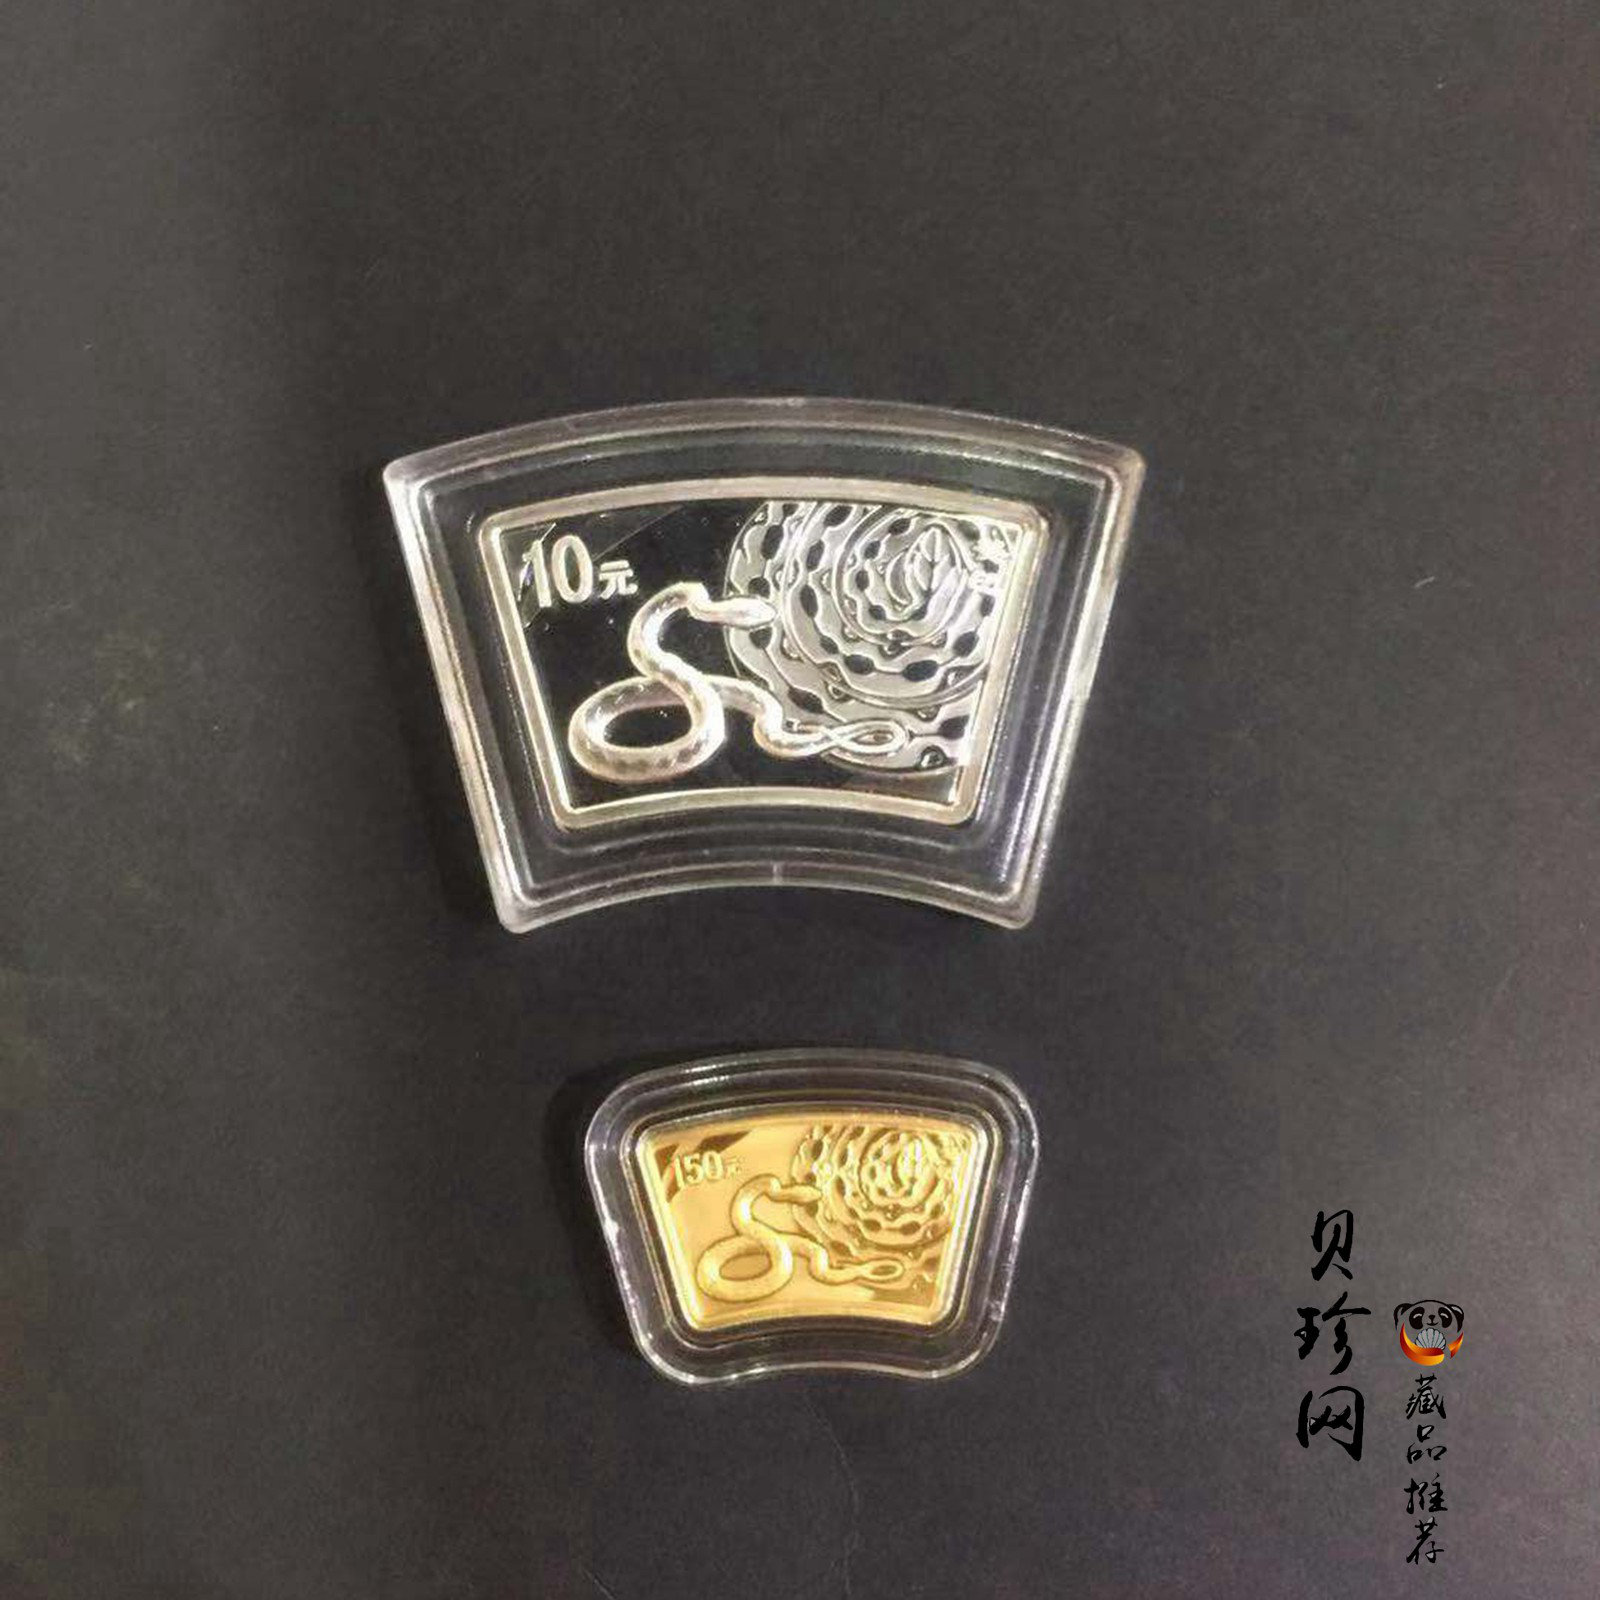 【139040】2013年癸巳蛇年生肖扇形金银币2枚一套